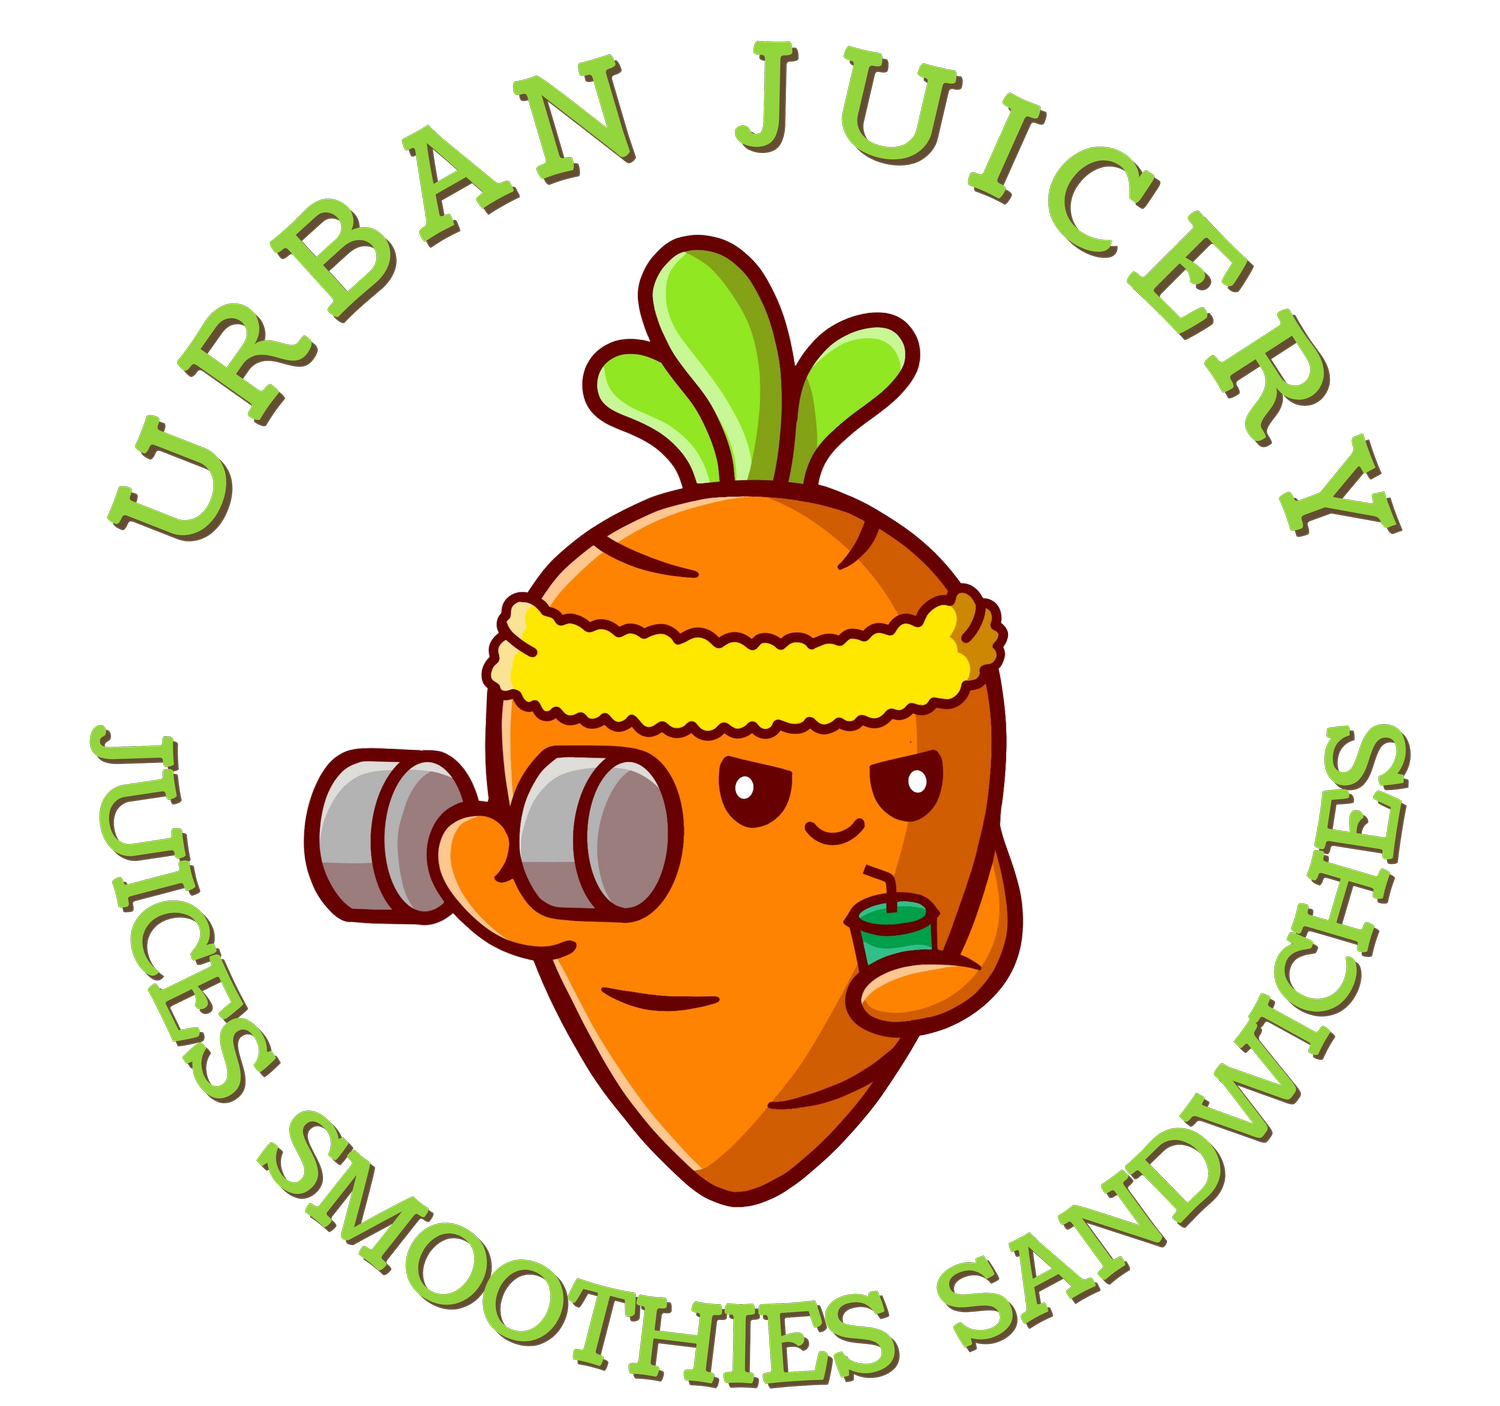 Urban Juicery